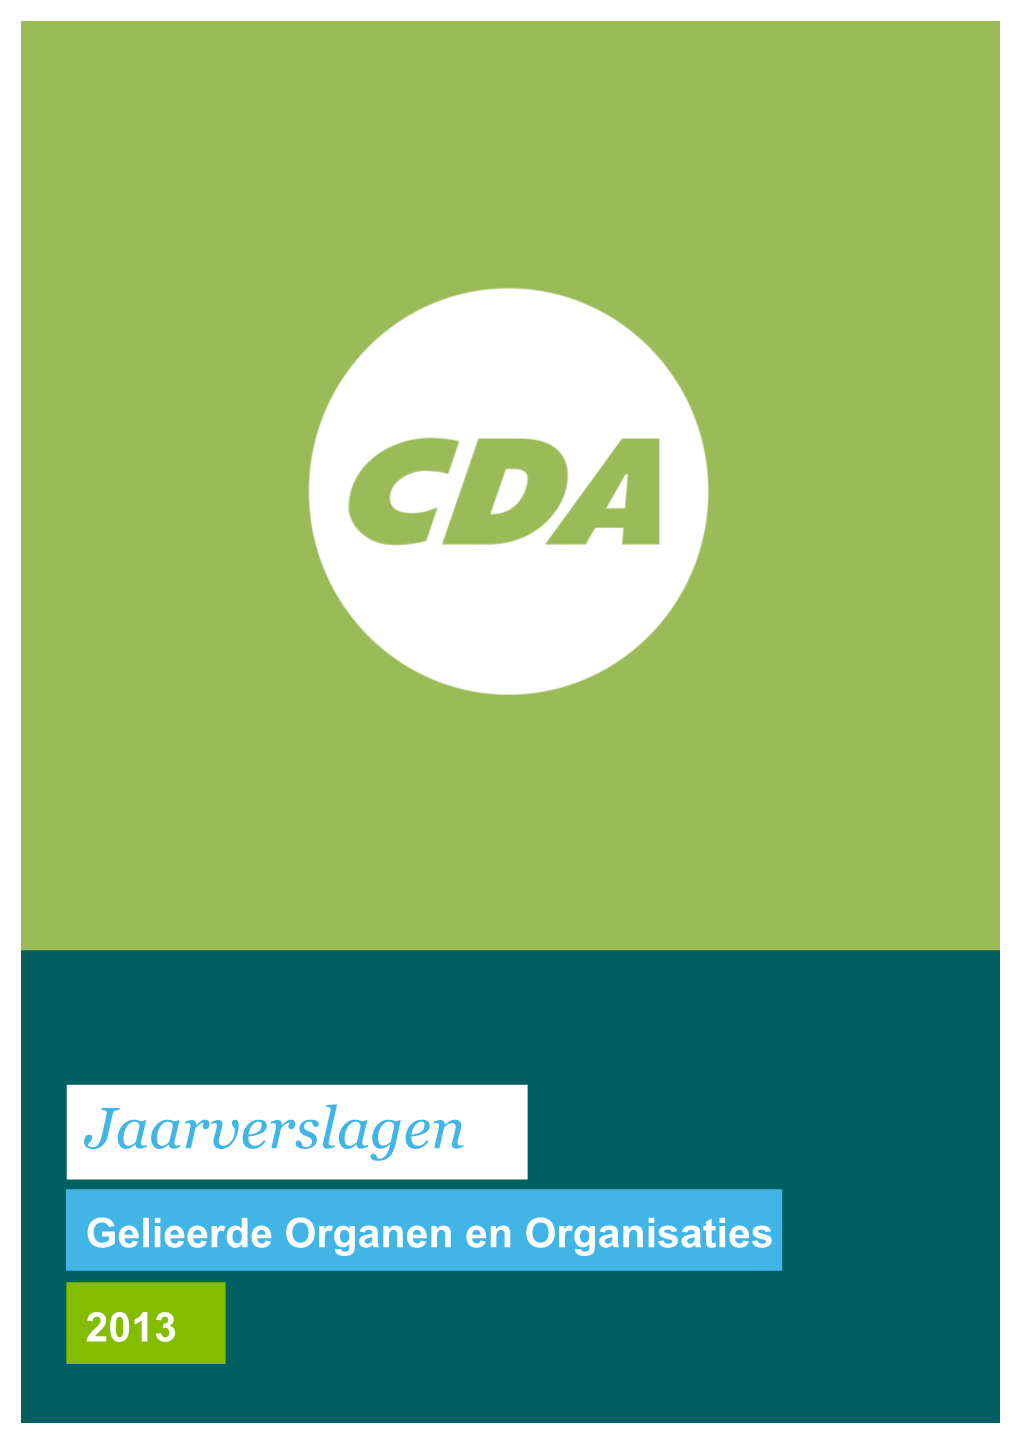 RUG/DNPP/Repository Jaarverslagen/2013/CDA